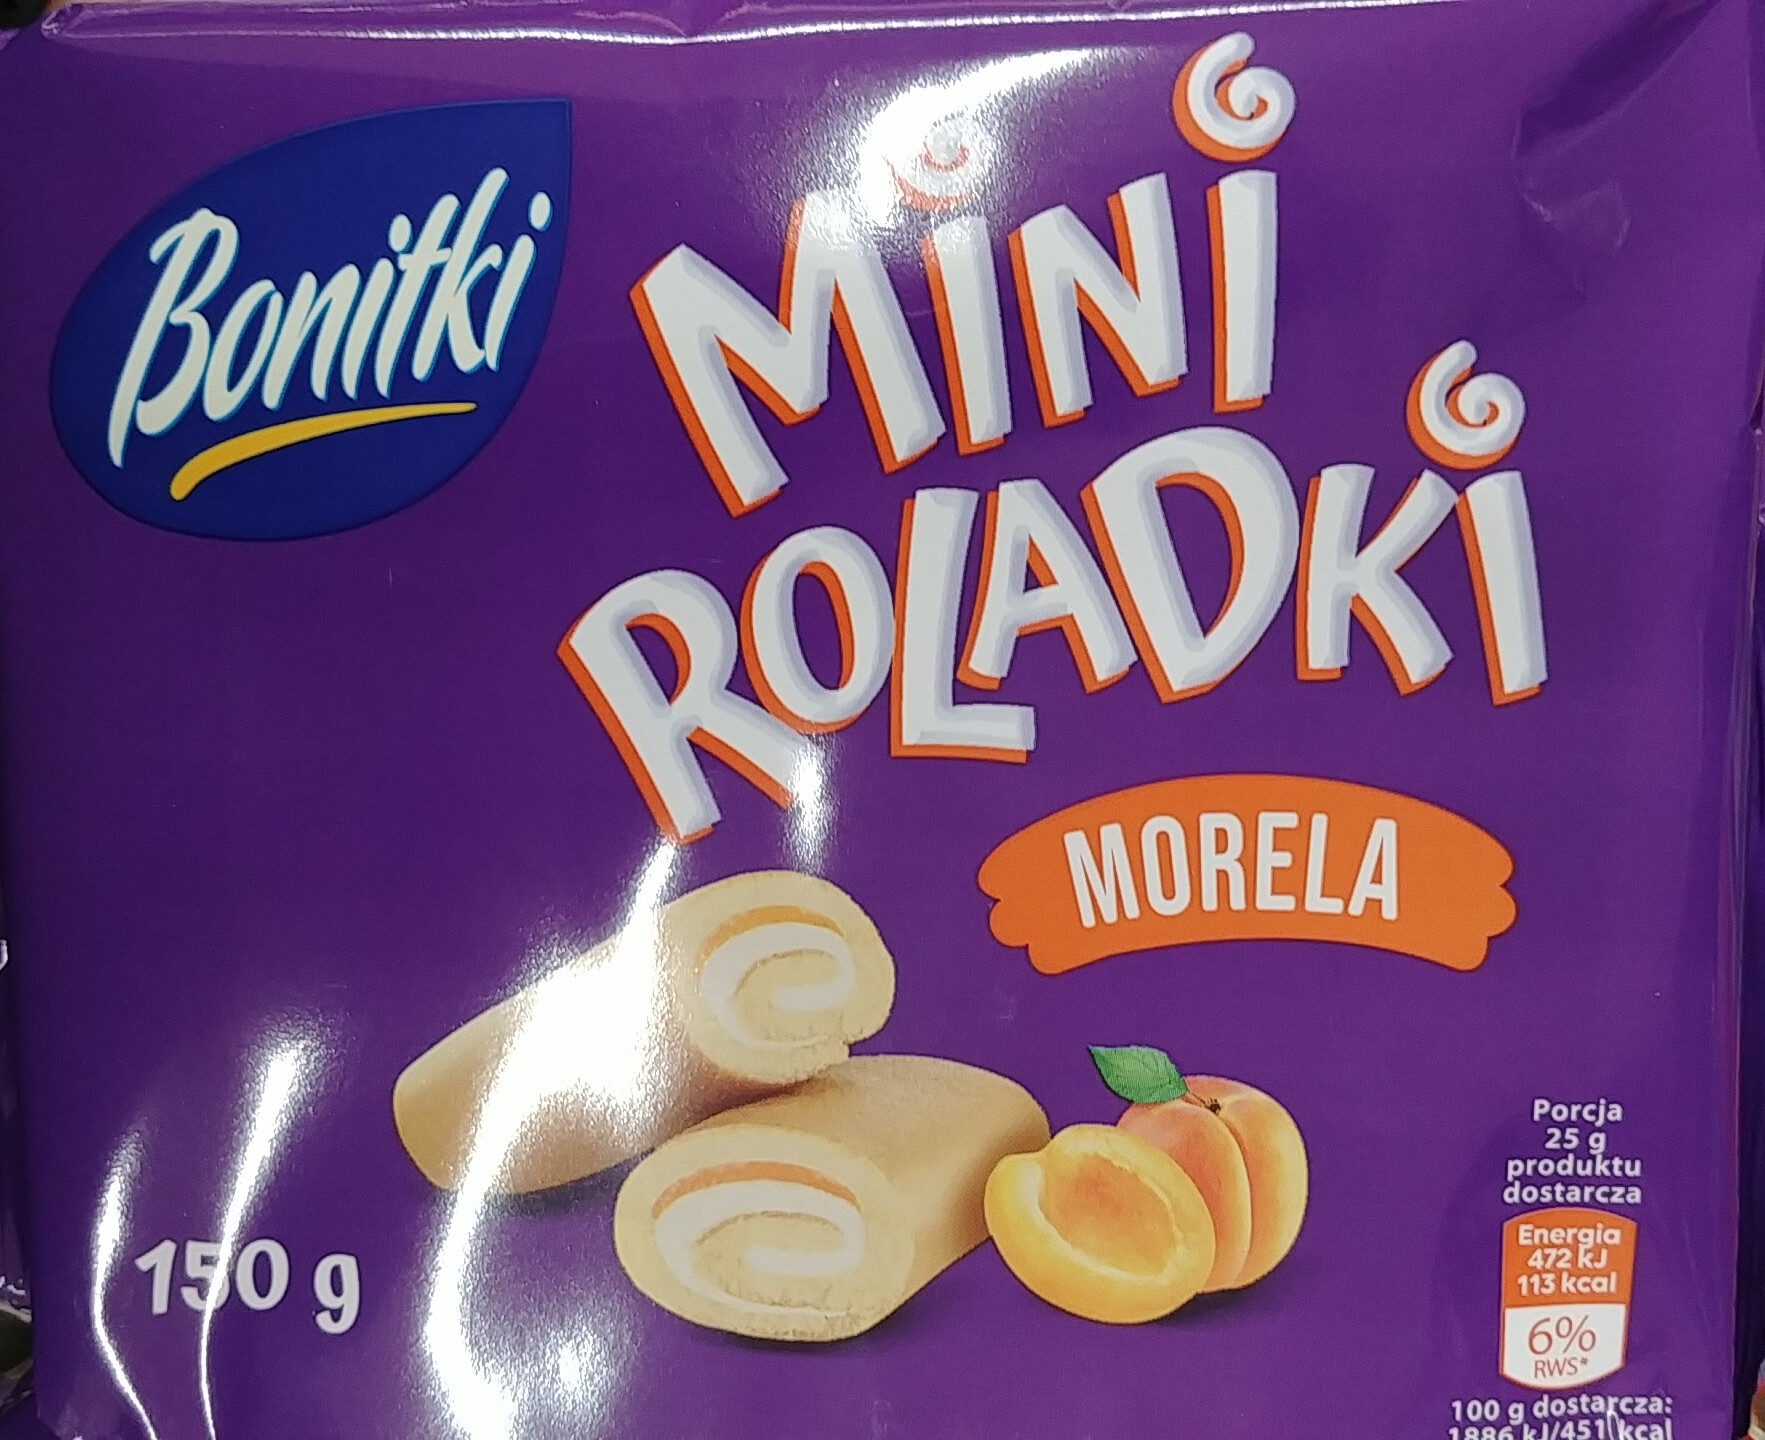 Bonitki Mini Roladki Morela - Product - pl